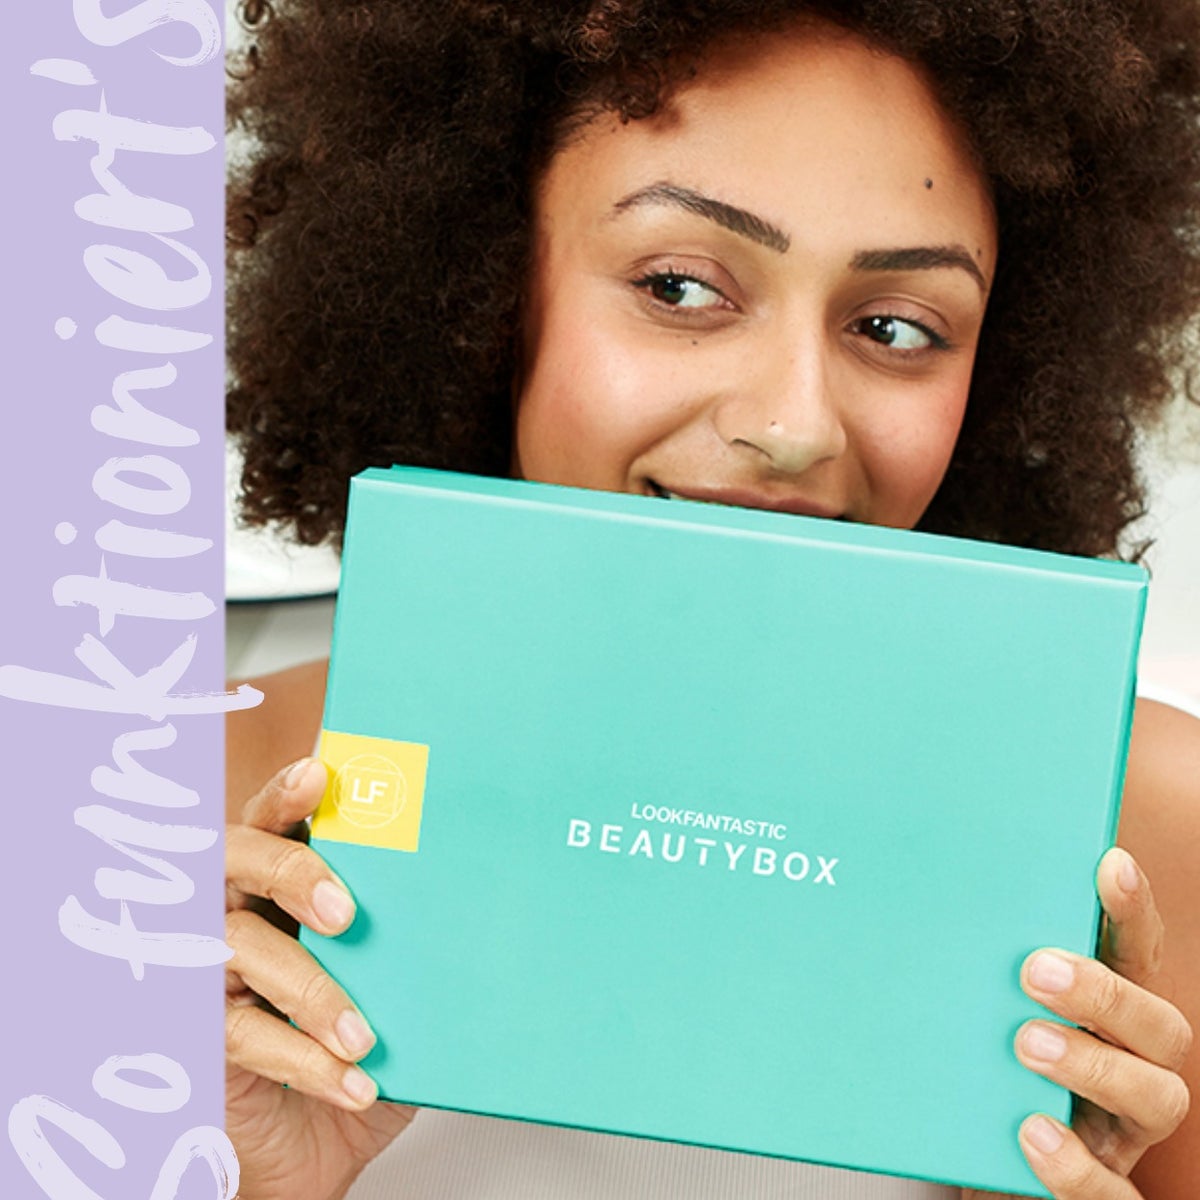 Erfahre mehr über die <b>lookfantastic Beauty Box</b>, eine monatliche Abobox, die 6 handverlesene Beautyprodukte im Wert von mindestens 50,00 € direkt zu dir nach Hause liefert.